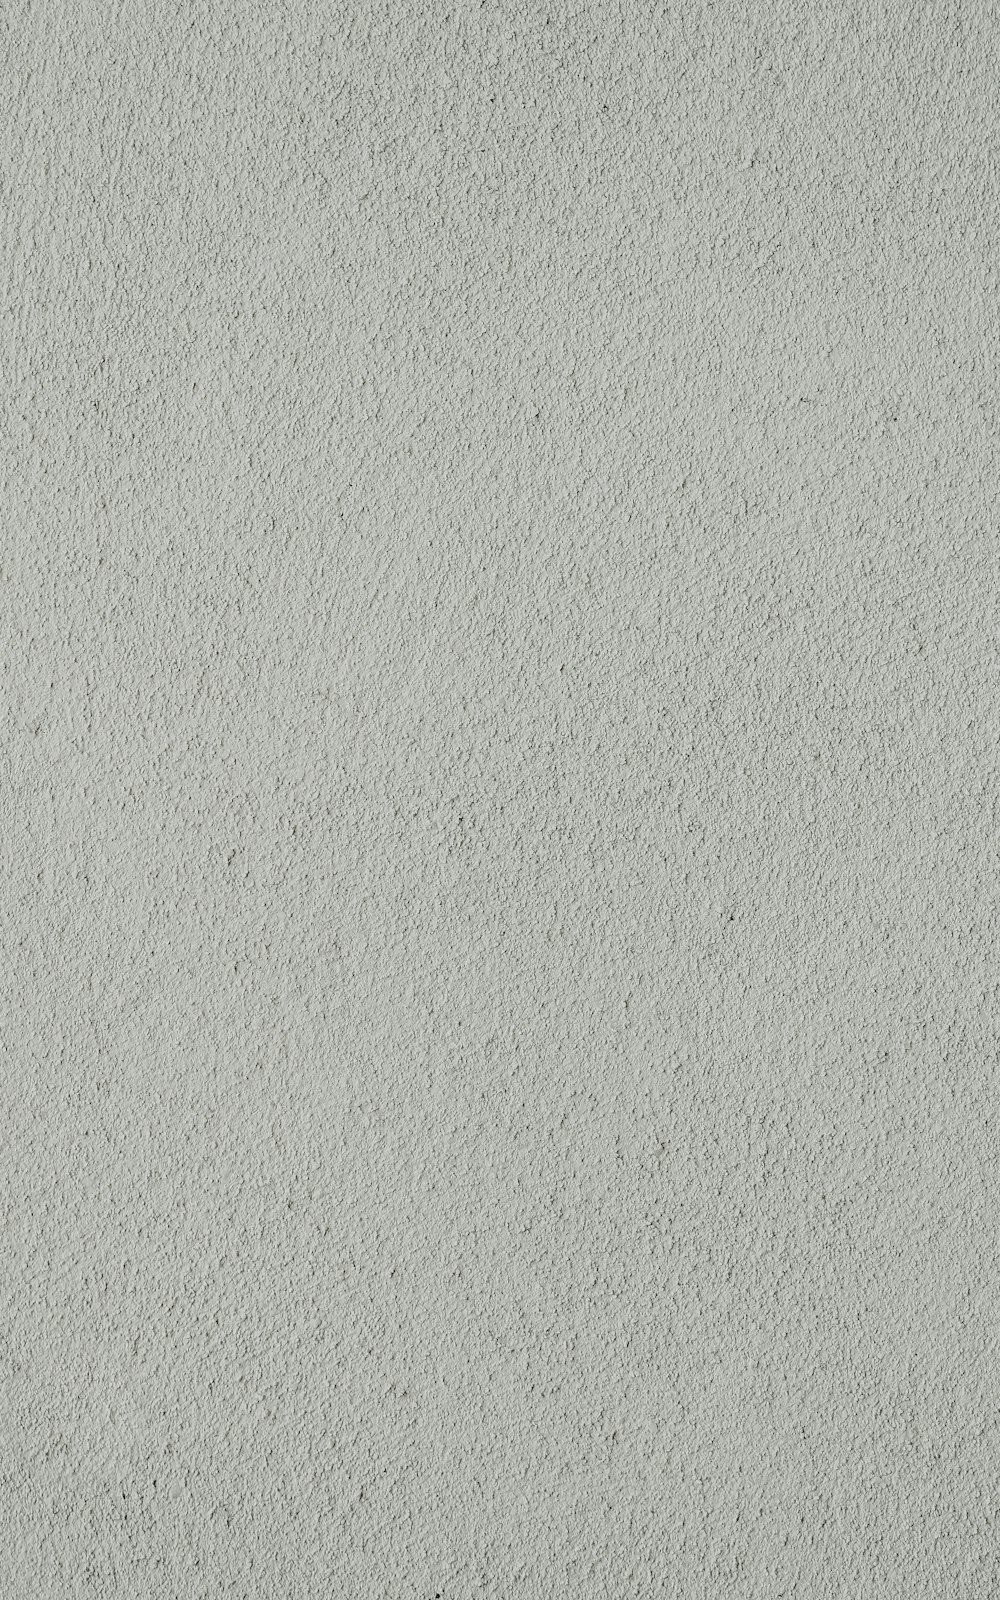 흰색과 회색 페인트 벽